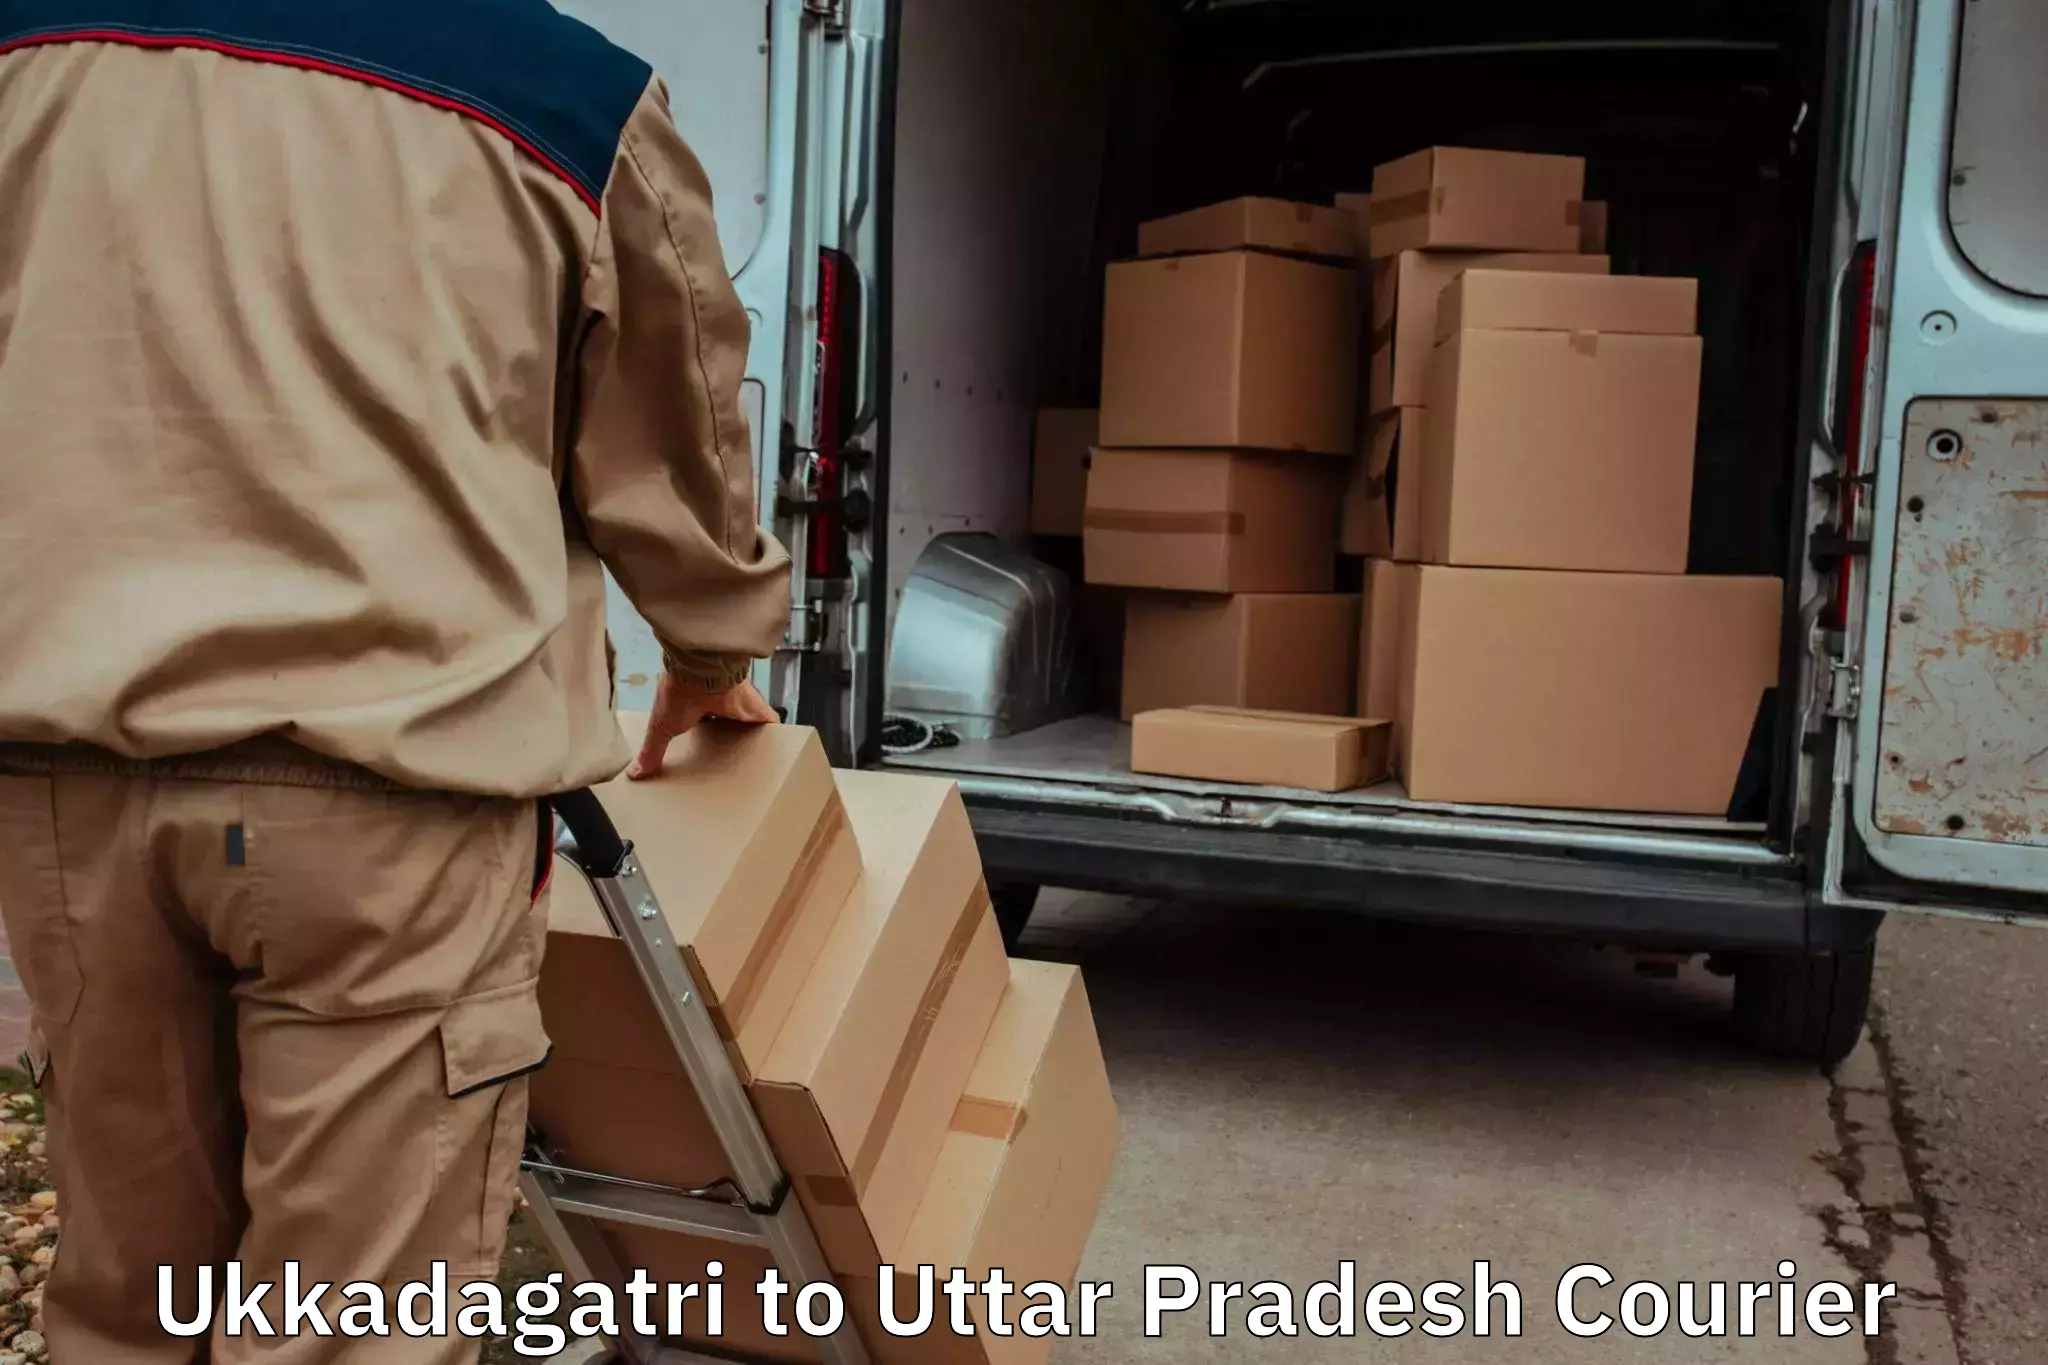 Hassle-free relocation in Ukkadagatri to Uttar Pradesh